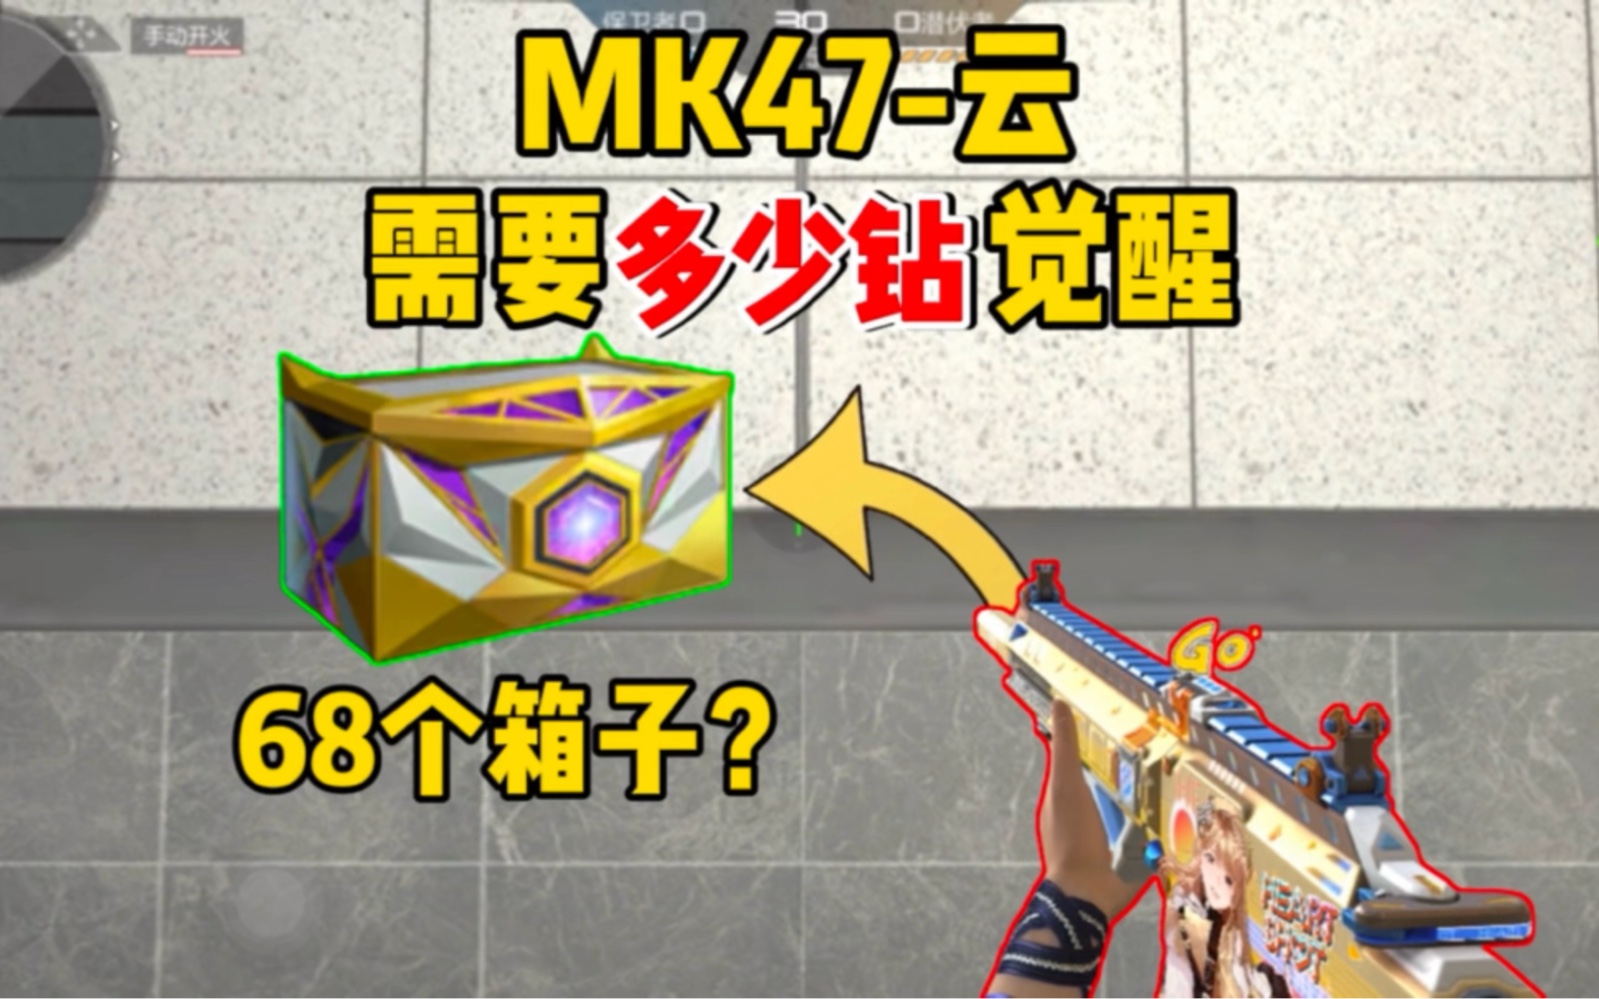 【CFM】MK47-云舞多少钻石才能觉醒？平民玩家能有机会吗？